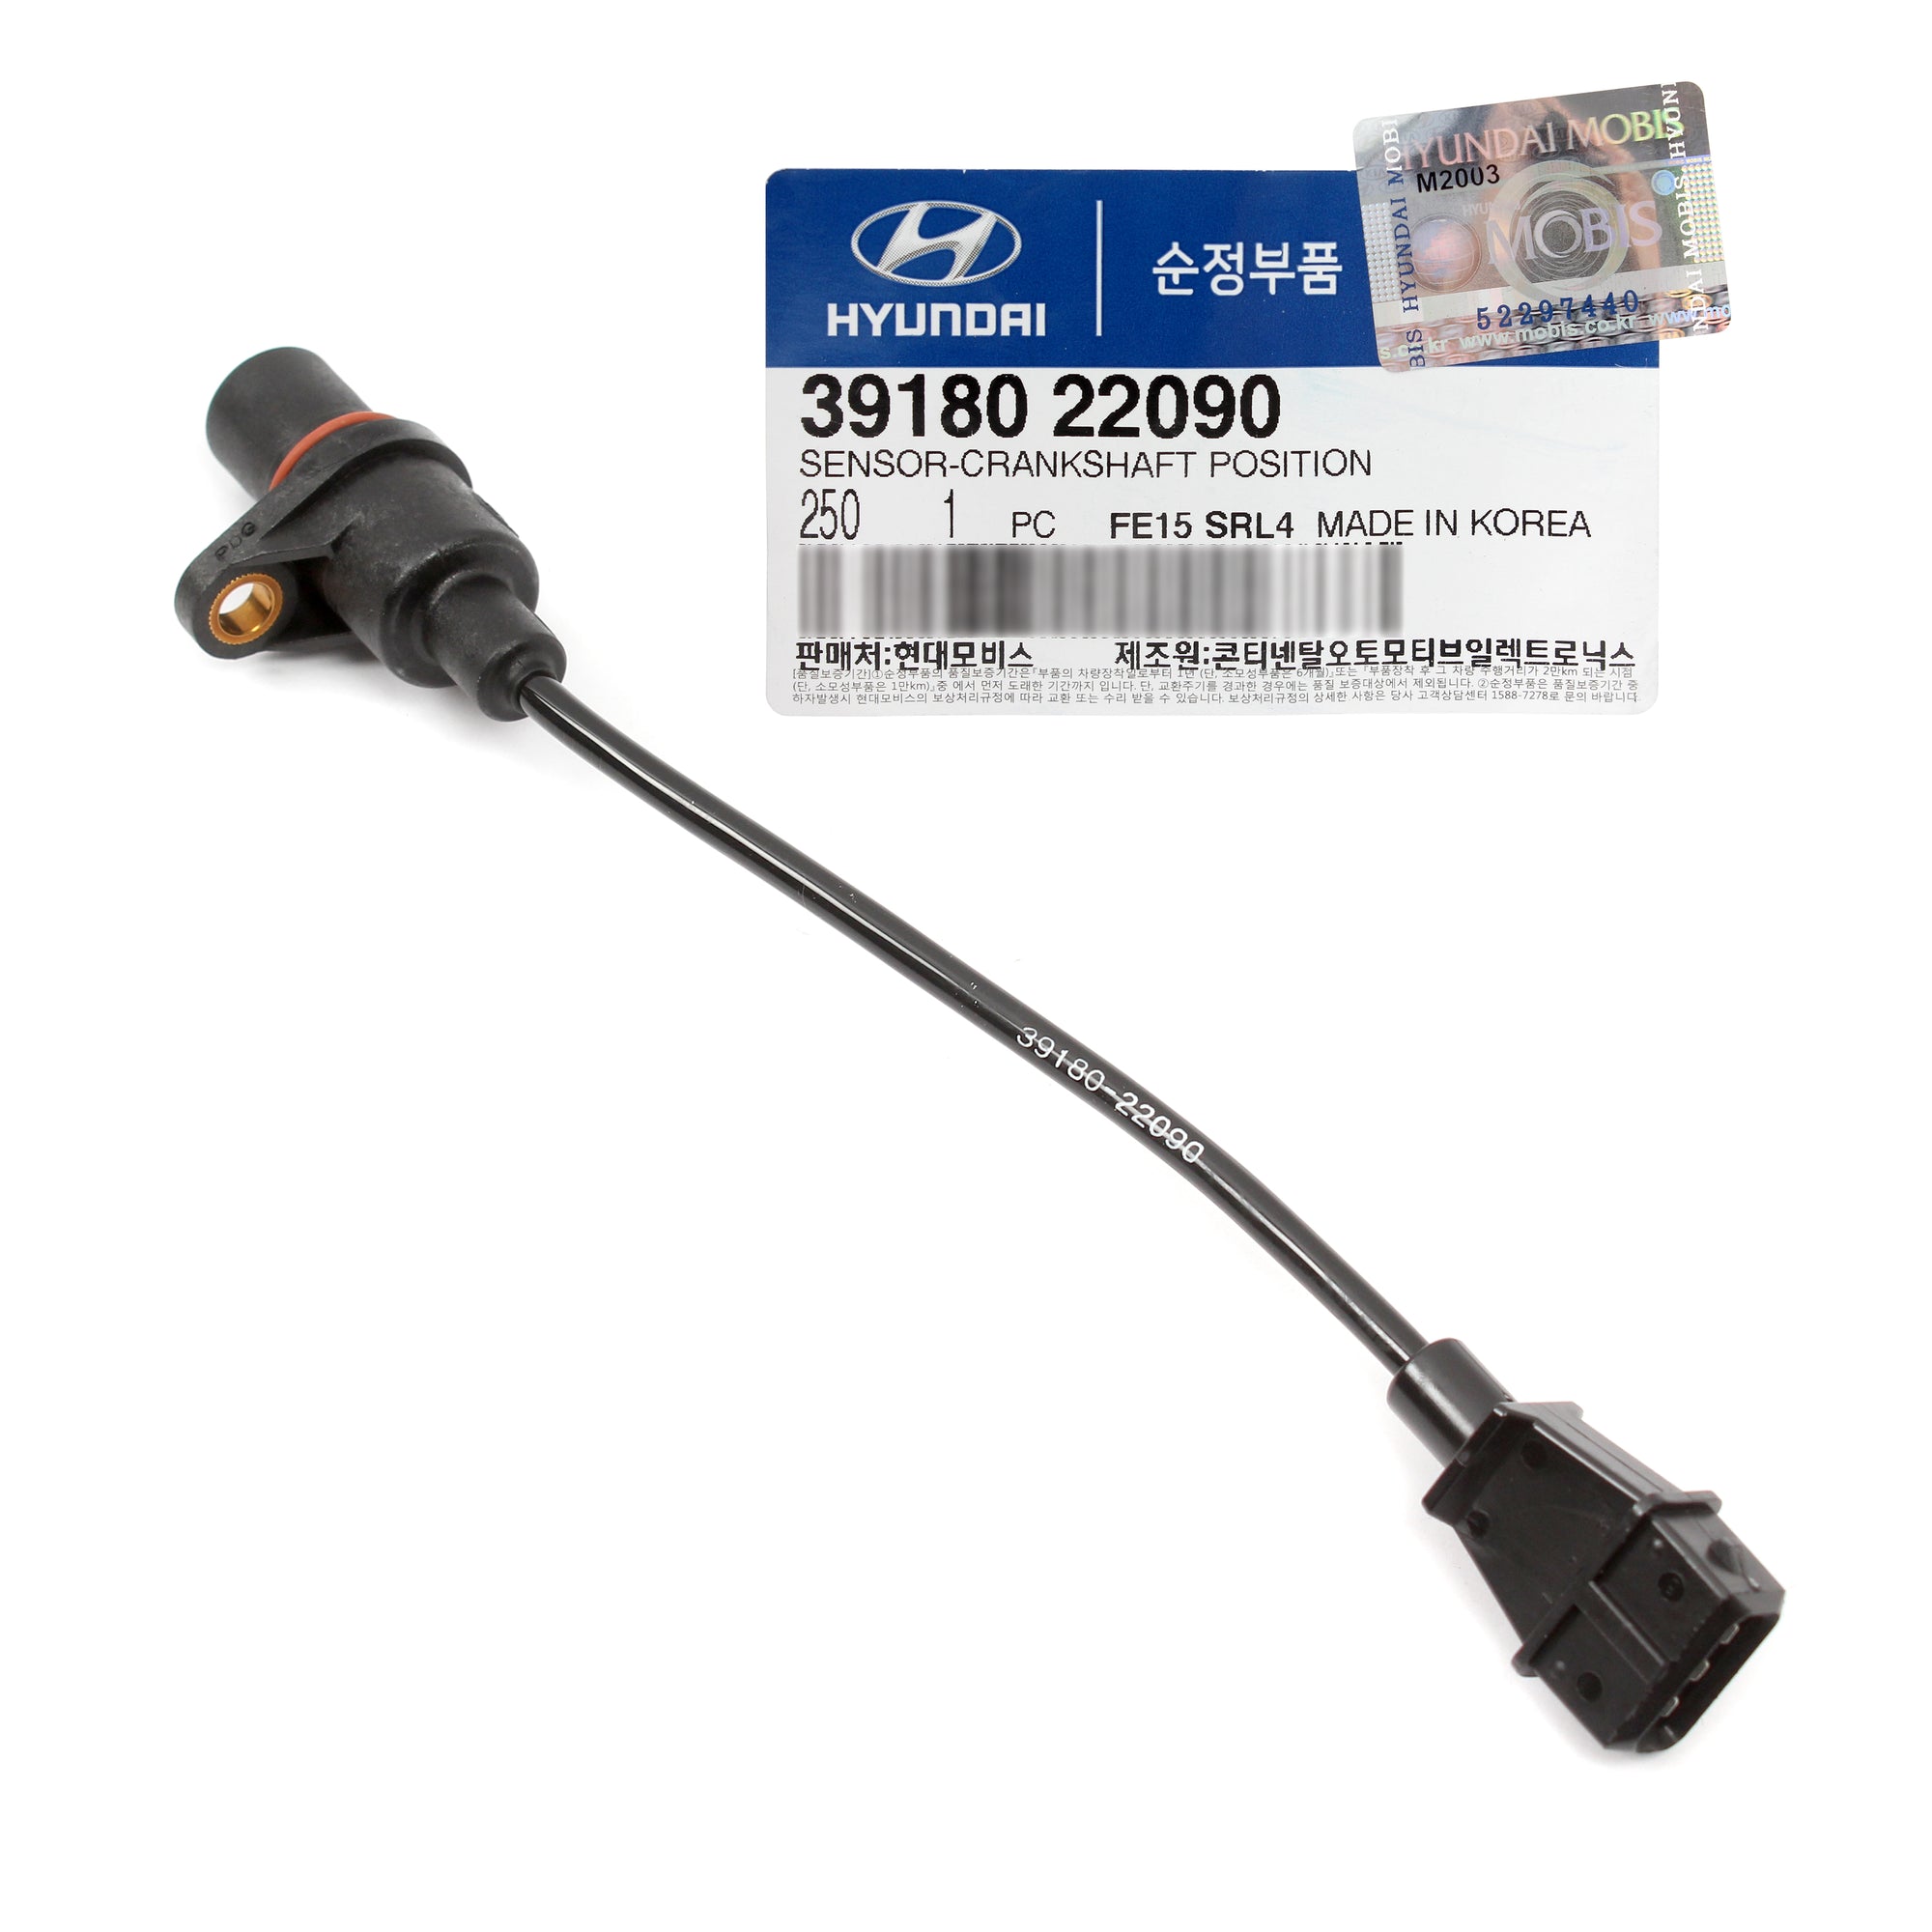 GENUINE Crankshaft Position Sensor for Hyundai Accent Elantra 3918022090